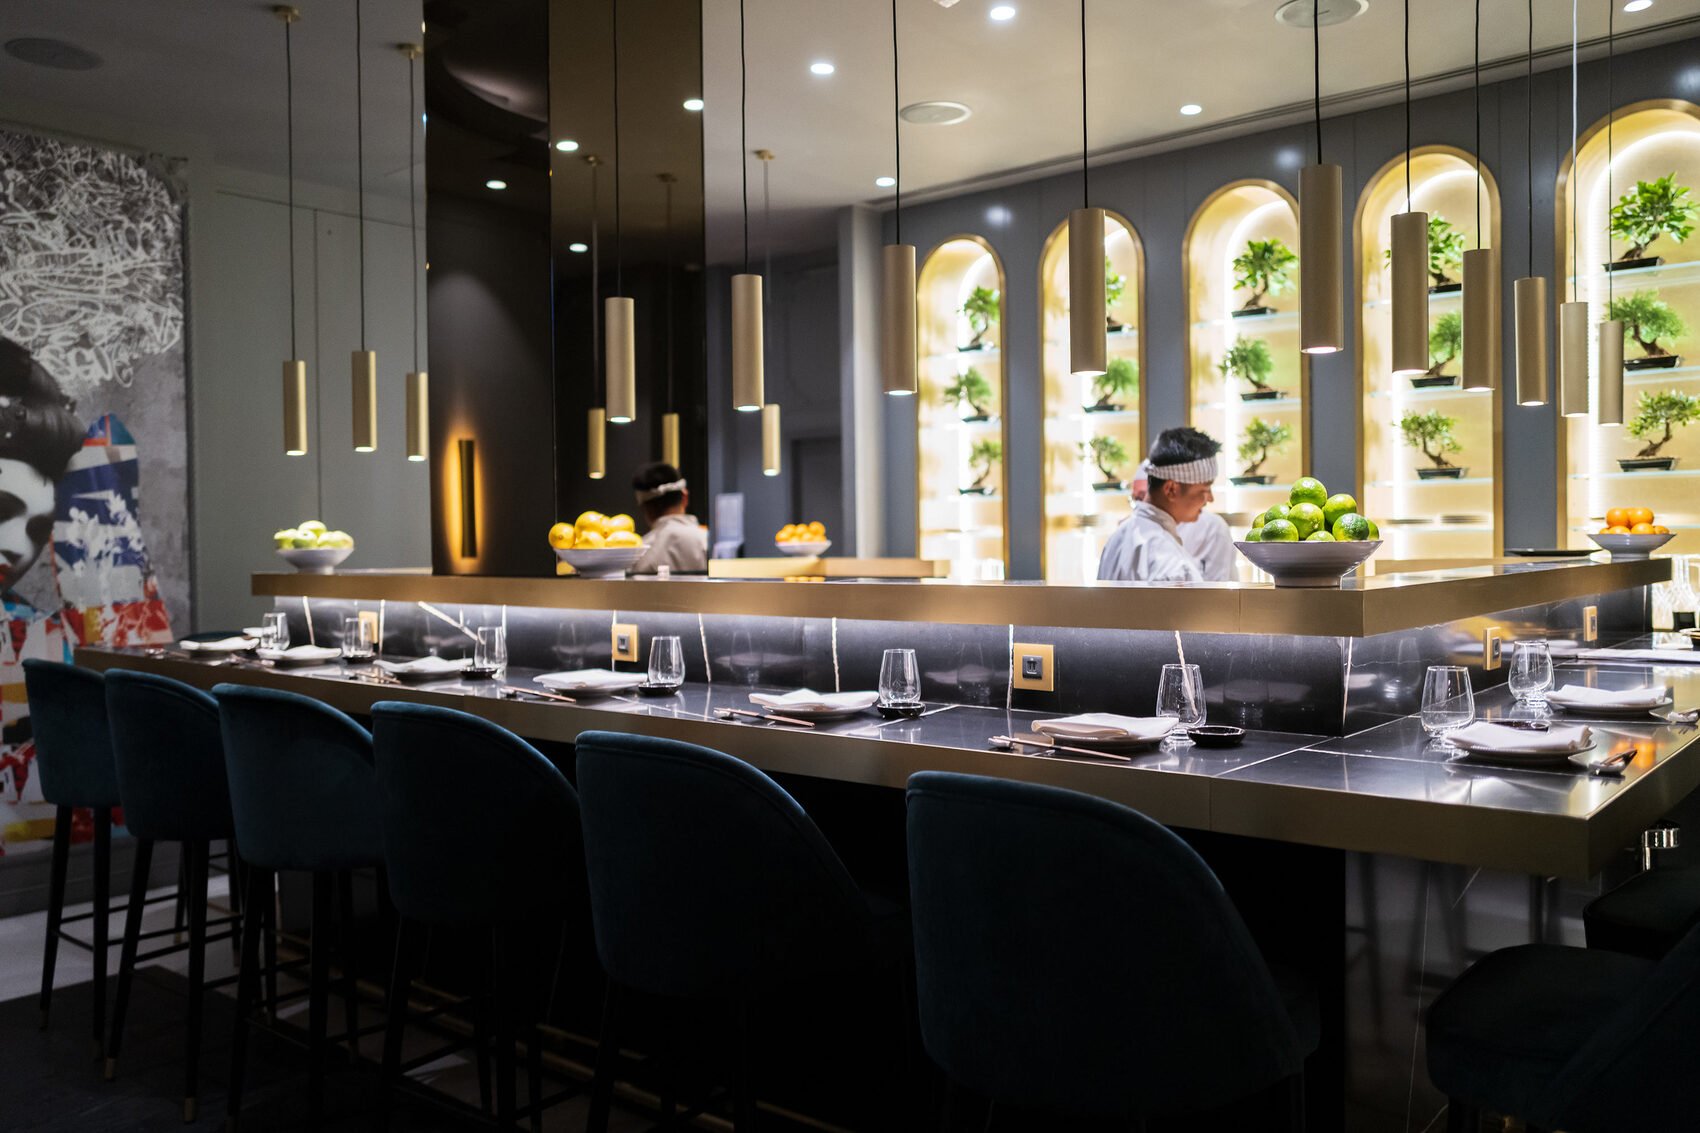 Hôtel de luxe - Maison Albar Hotels Le Vendome 5* - restaurant Yakuza by Olivier cuisine japonaise